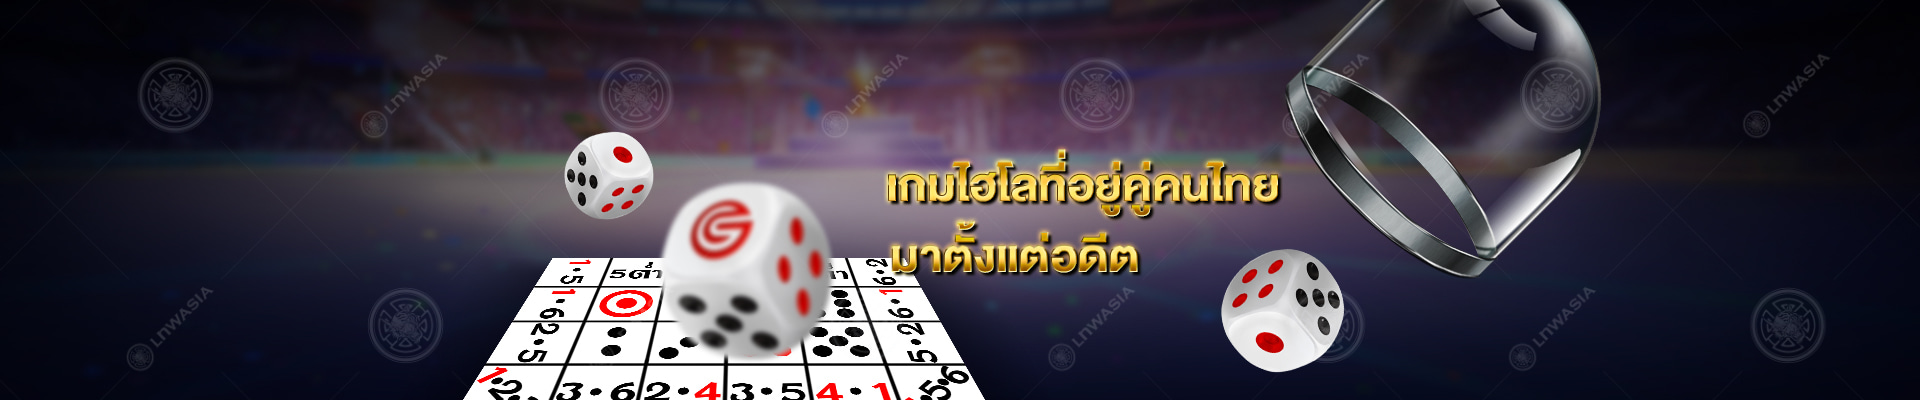 ไฮโล: เกมการพนันที่อยู่เคียงคู่กับประเพณีไทยมาหลายสิบปี Gclub